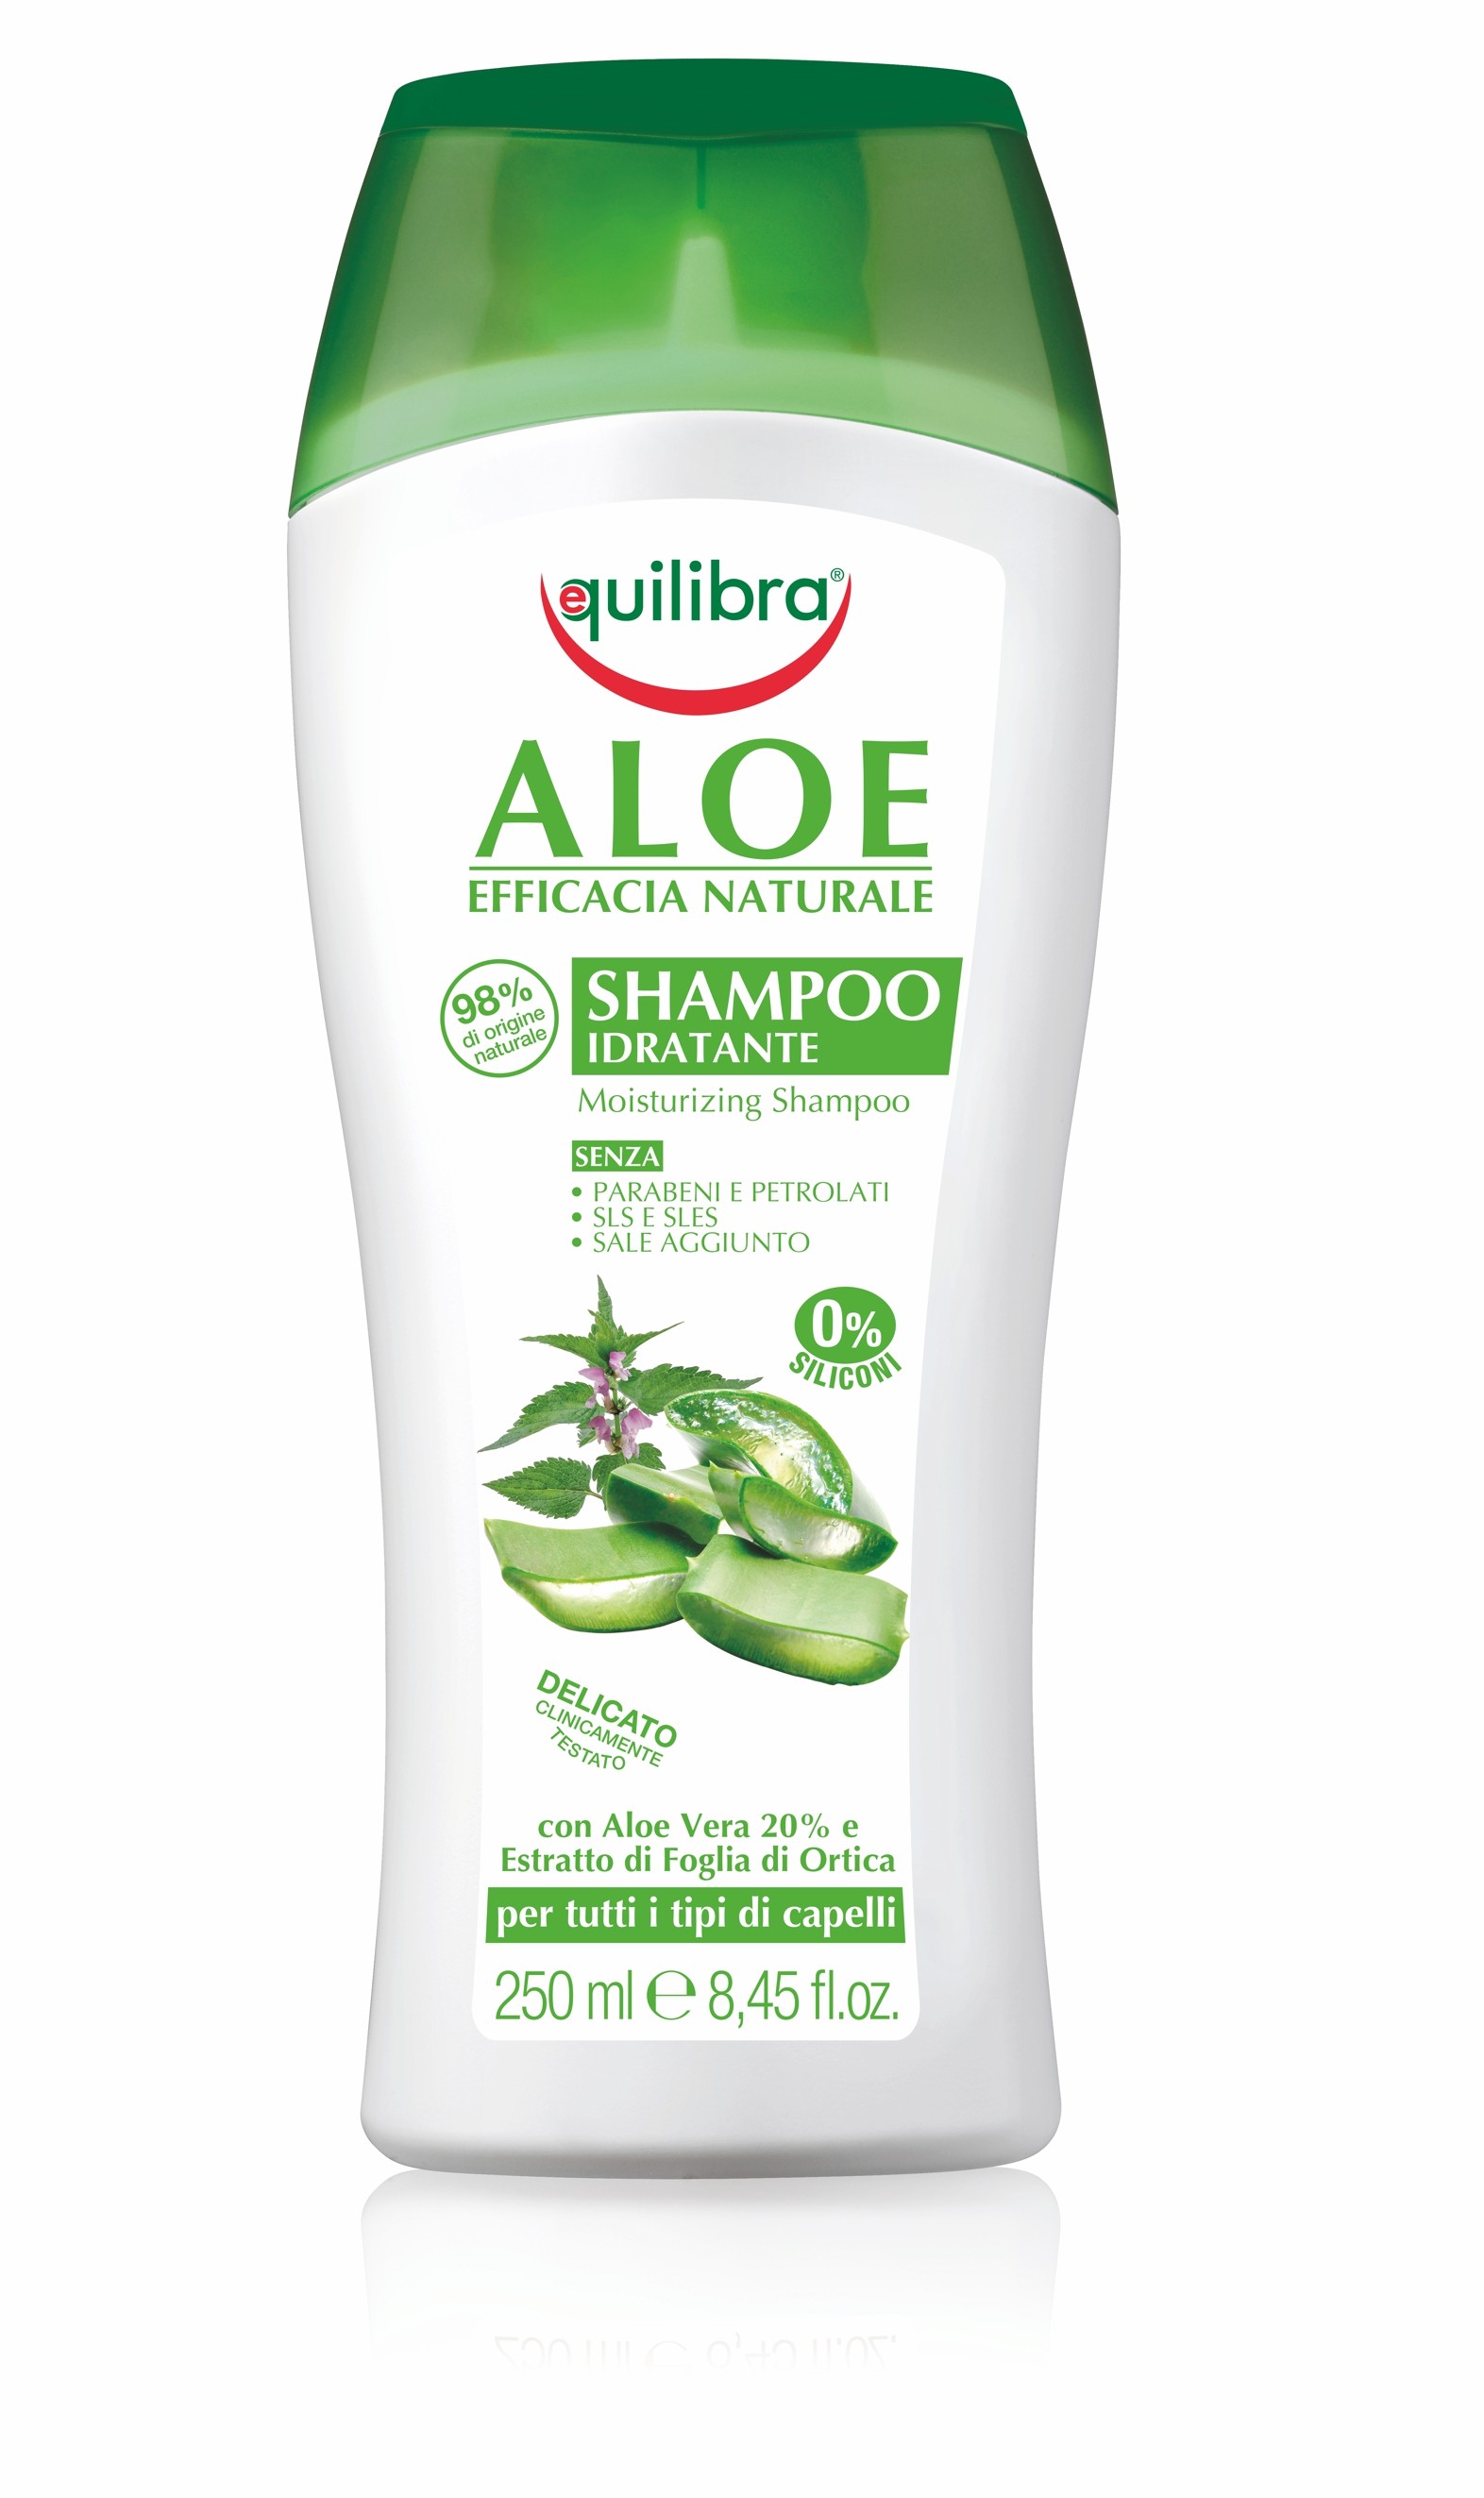 nawilżający szampon aloesowy do włosów equilibra naturale aloe